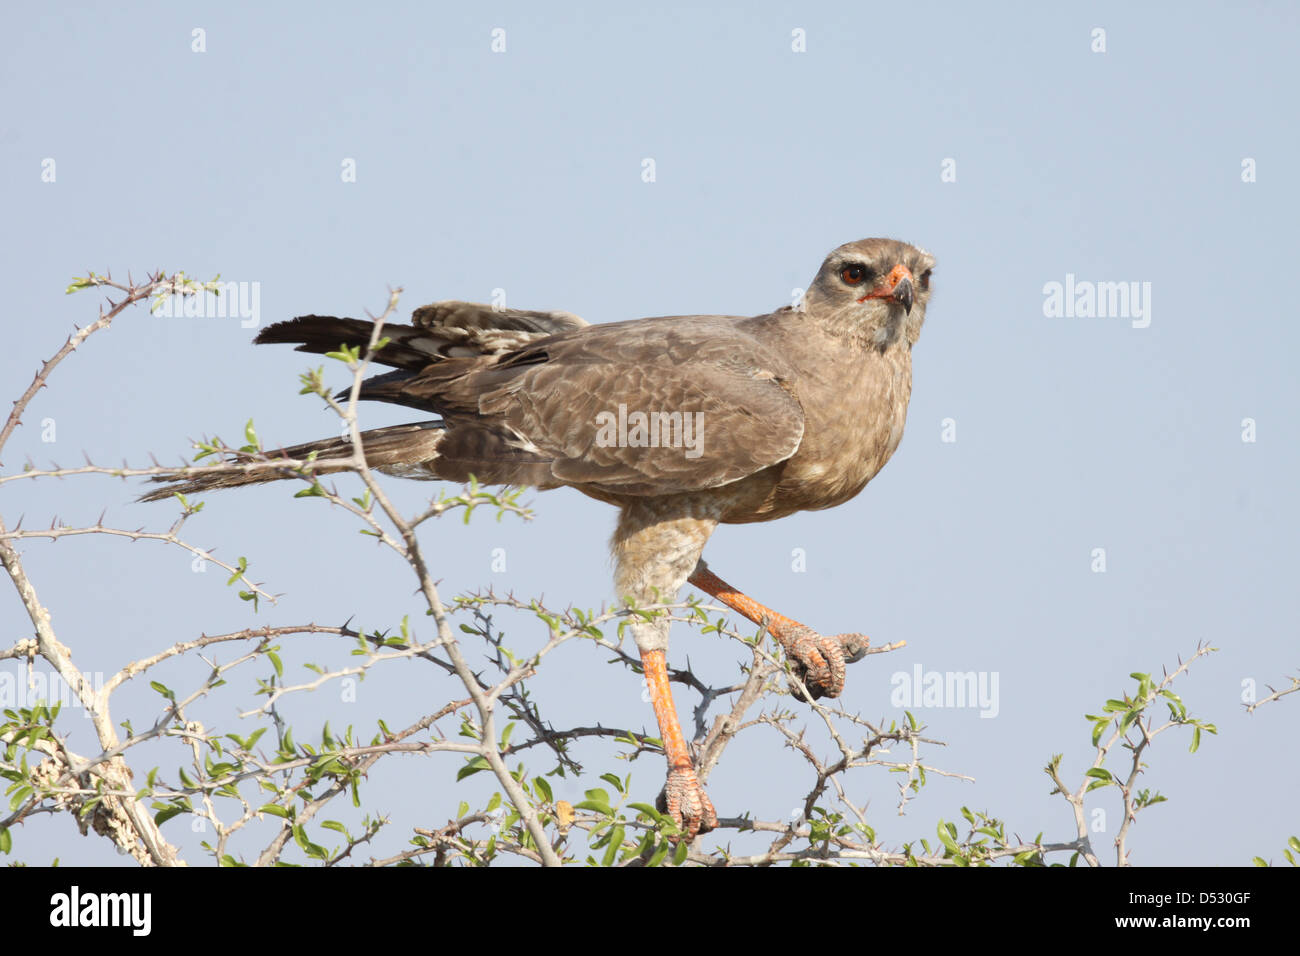 Falcon, Namibia, Africa Stock Photo